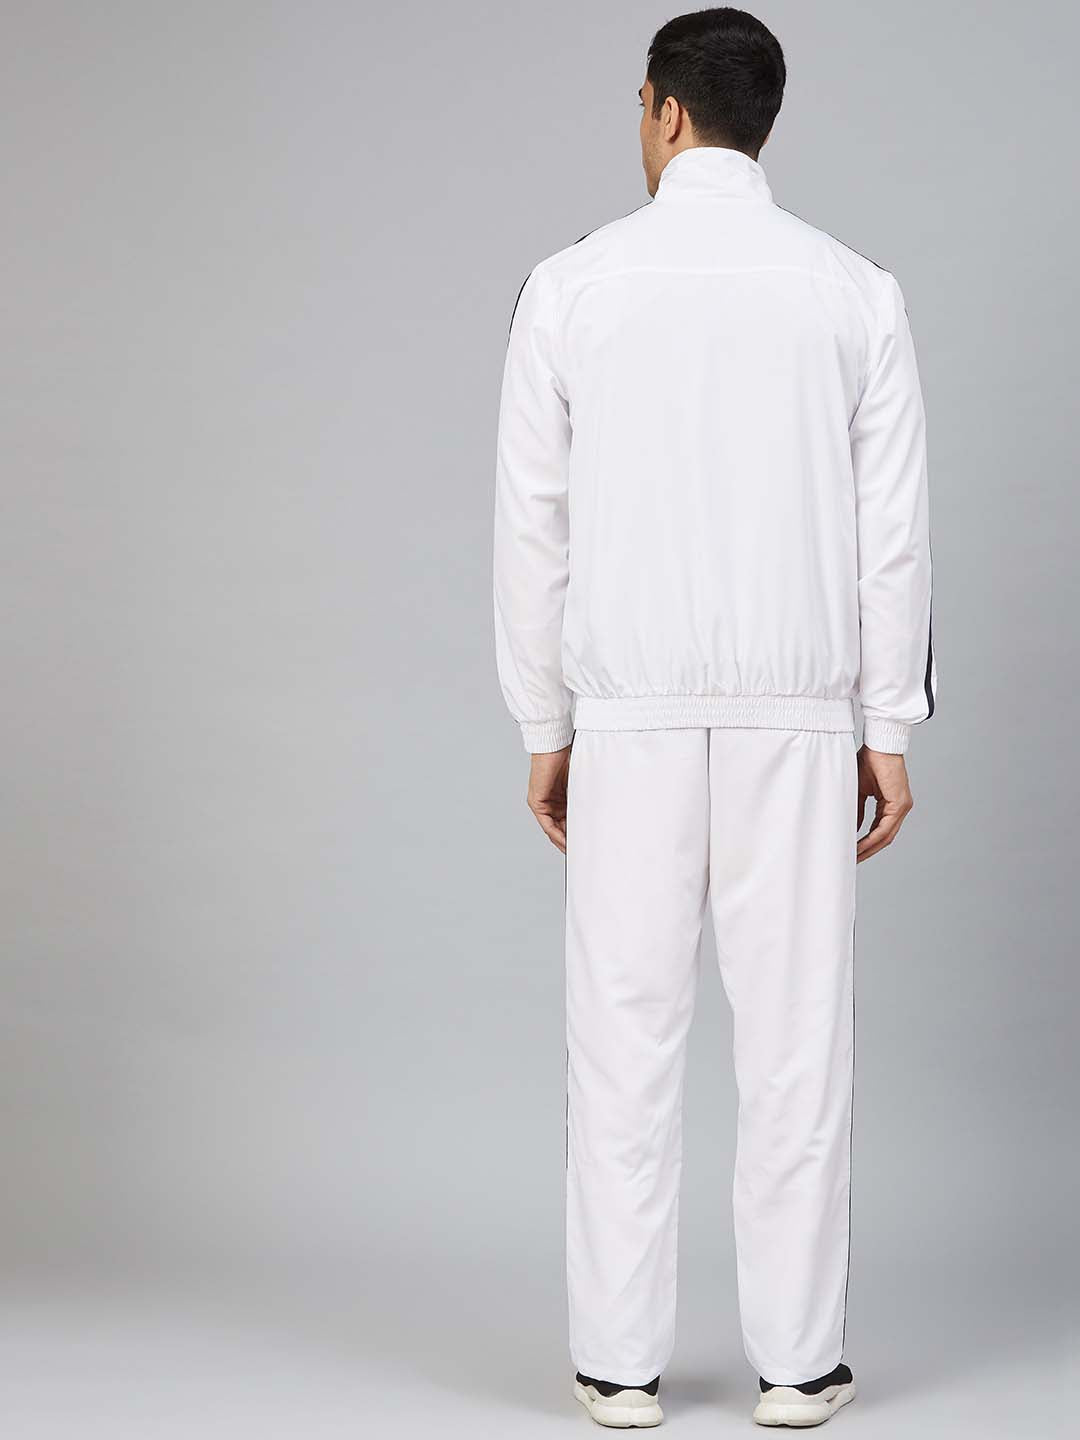 Alcis Men Printed White Track Suit